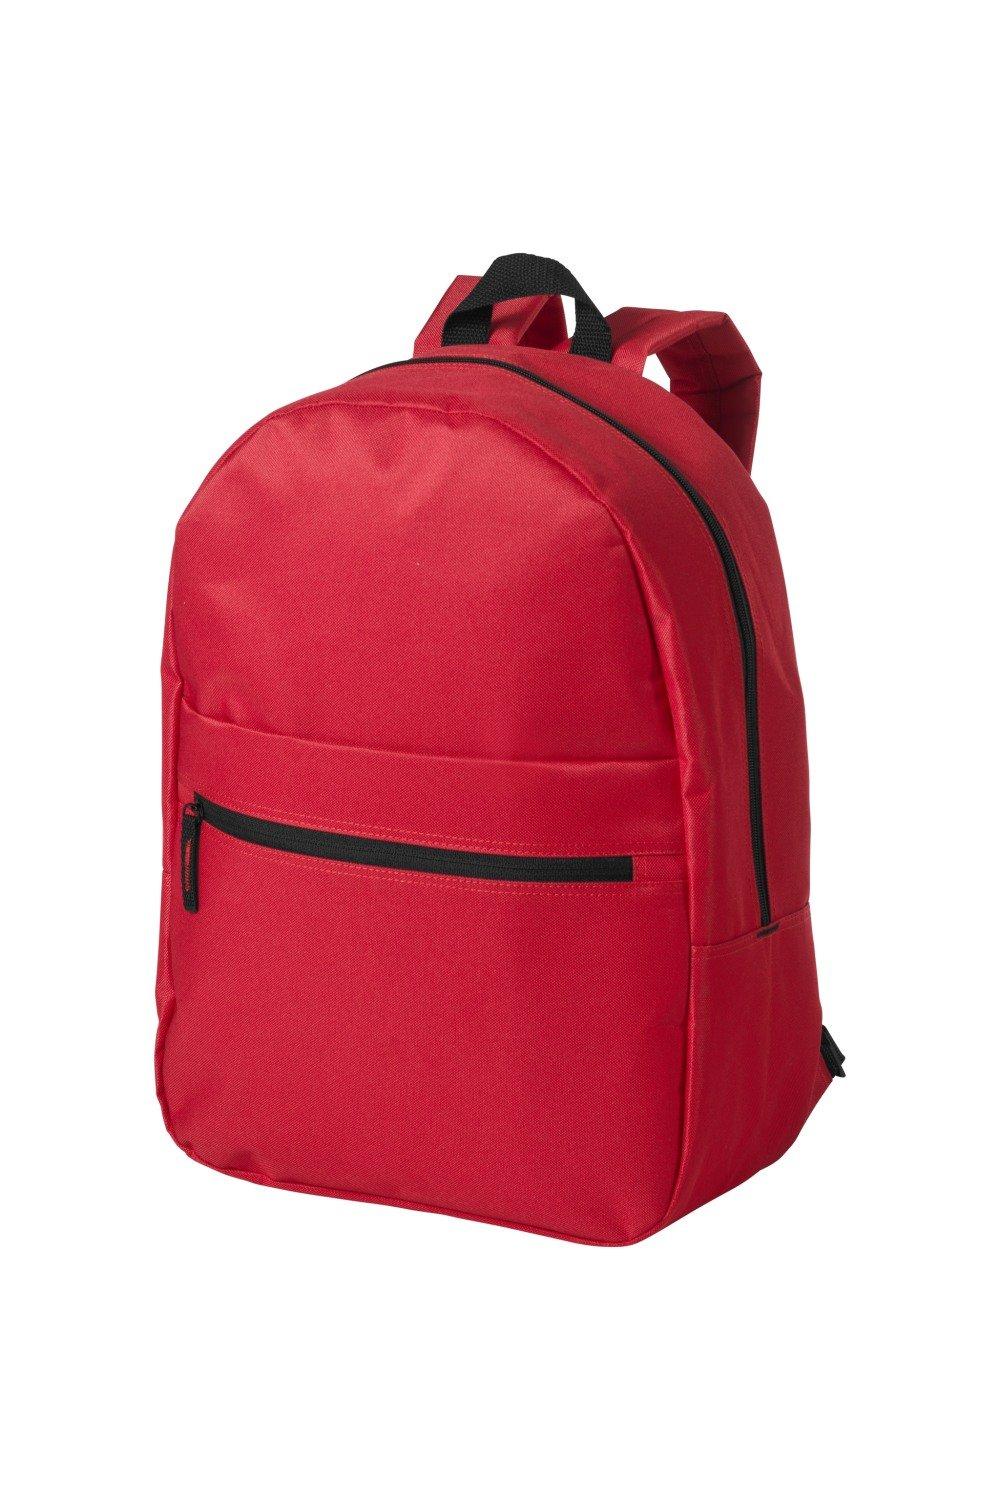 Ванкуверский рюкзак Bullet, красный рюкзак с карманом единорог 1 шт